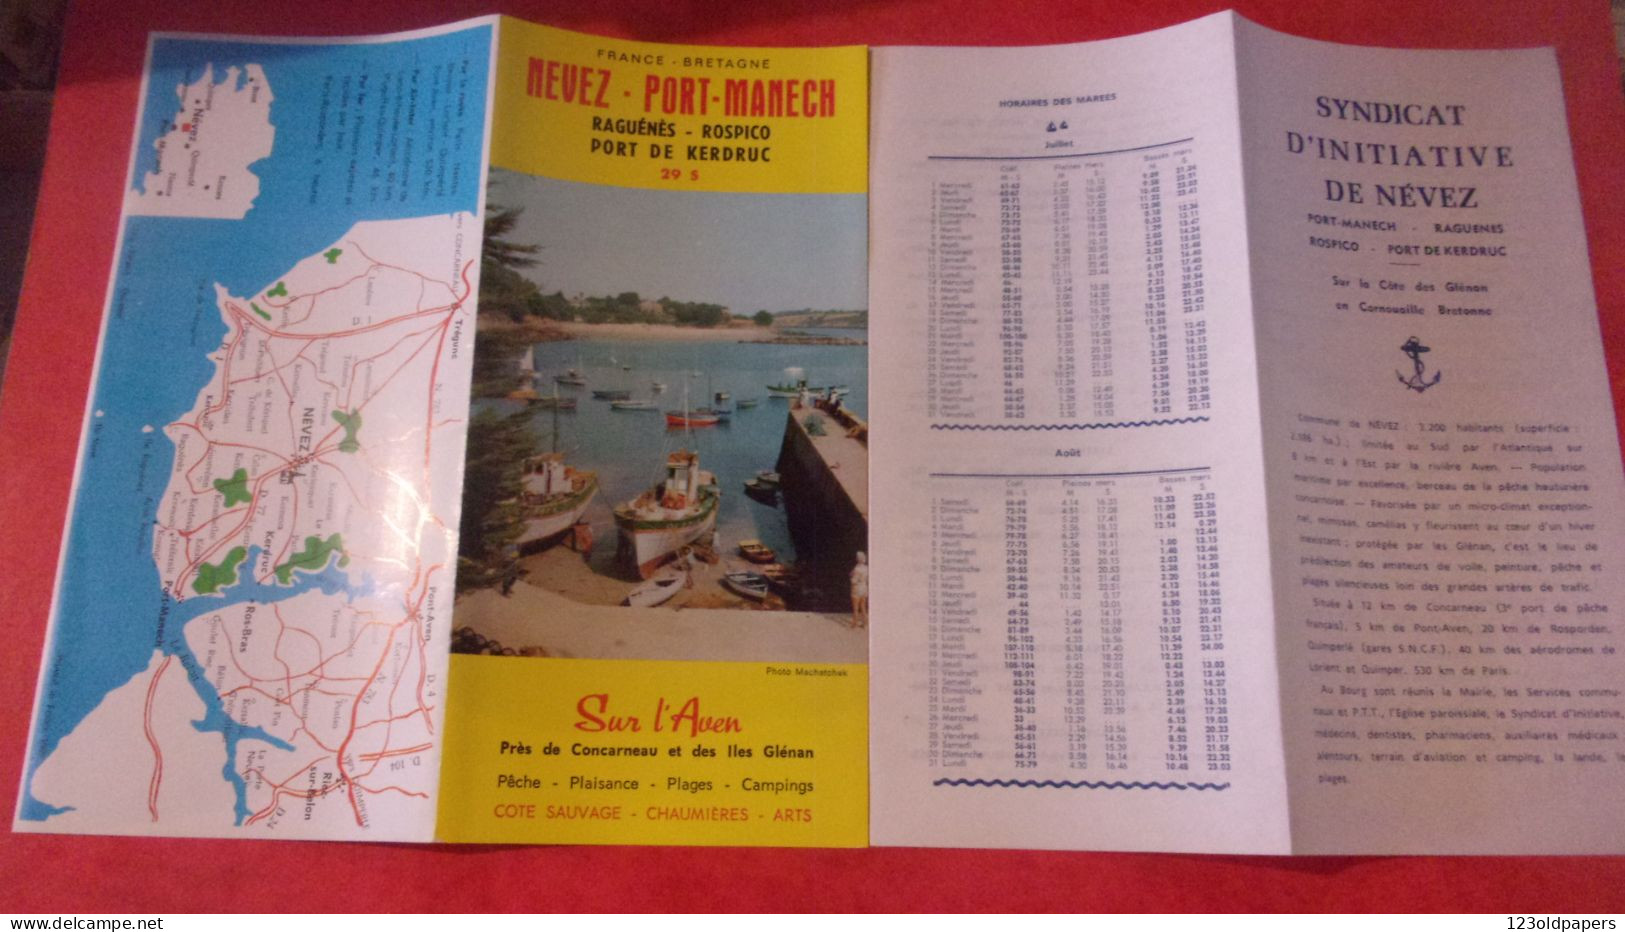 DEPLIANT NEVEZ PORT MANECH RAGUENES ROSPICO KERDRUC - Tourism Brochures